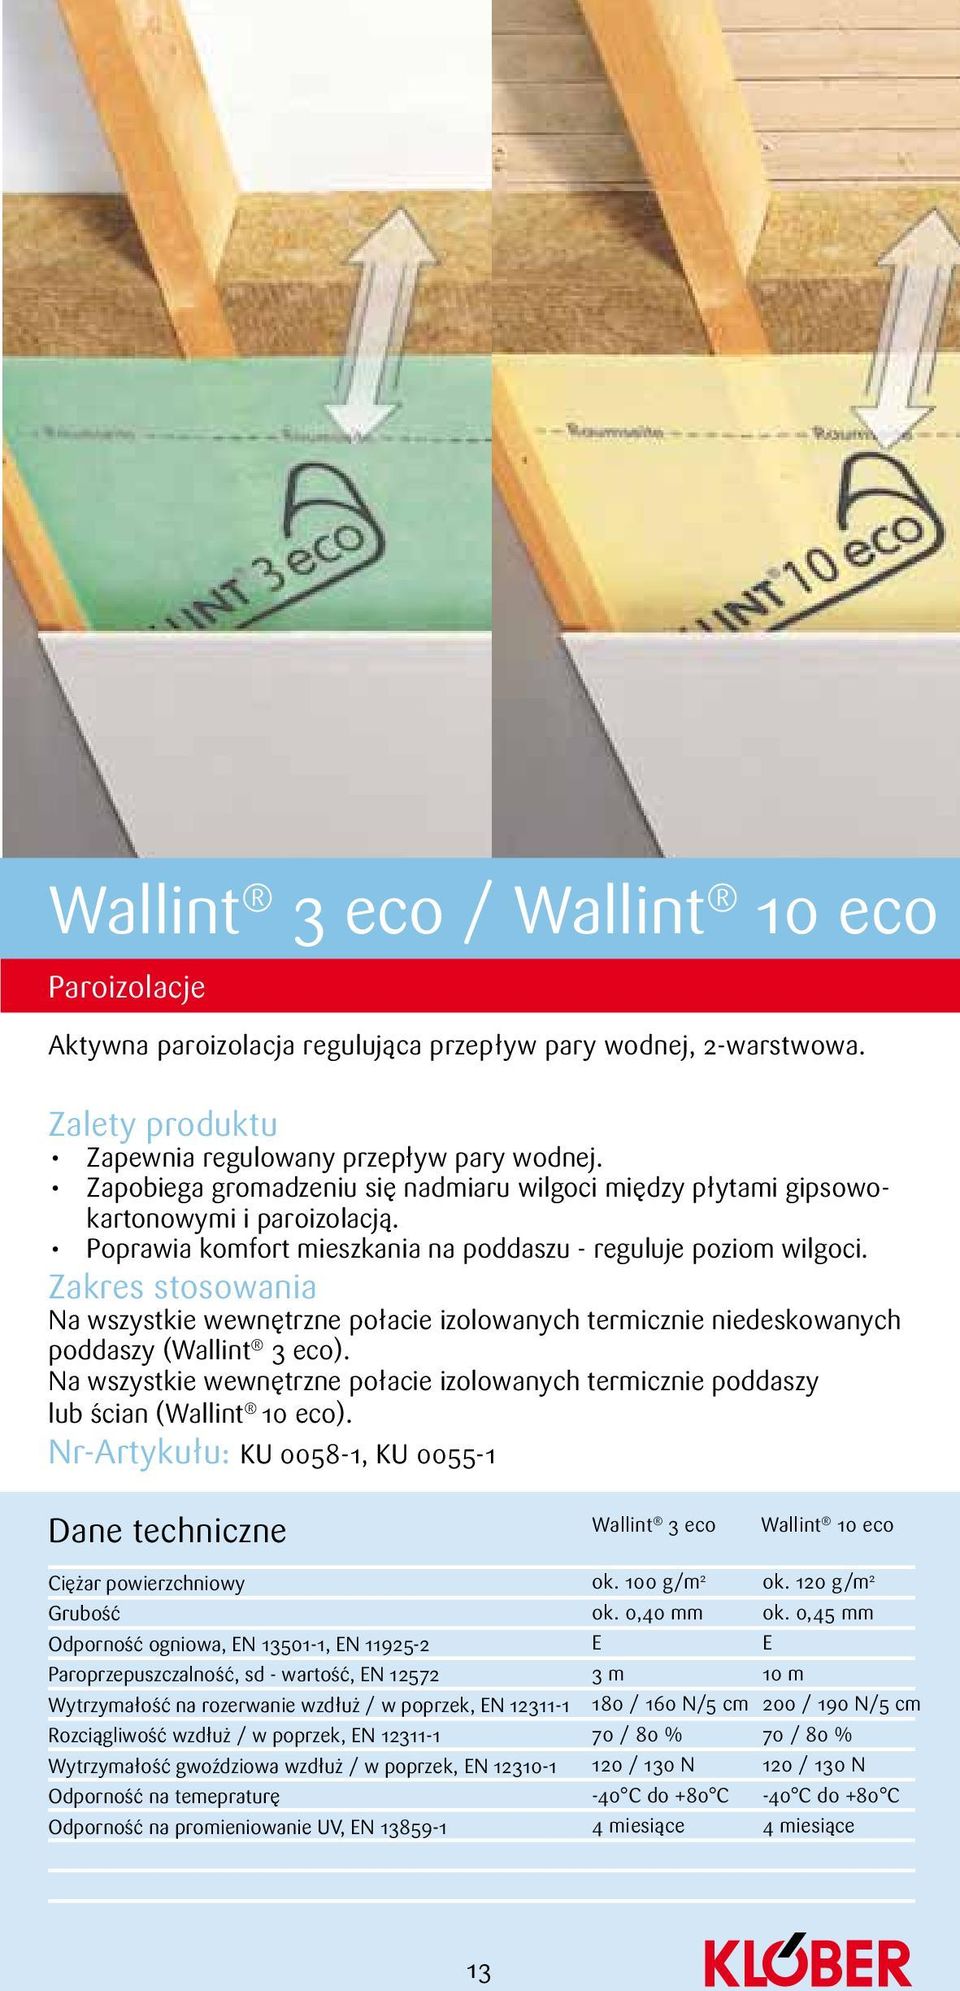 Na wszystkie wewnętrzne połacie izolowanych termicznie niedeskowanych poddaszy (Wallint 3 eco). Na wszystkie wewnętrzne połacie izolowanych termicznie poddaszy lub ścian (Wallint 10 eco).